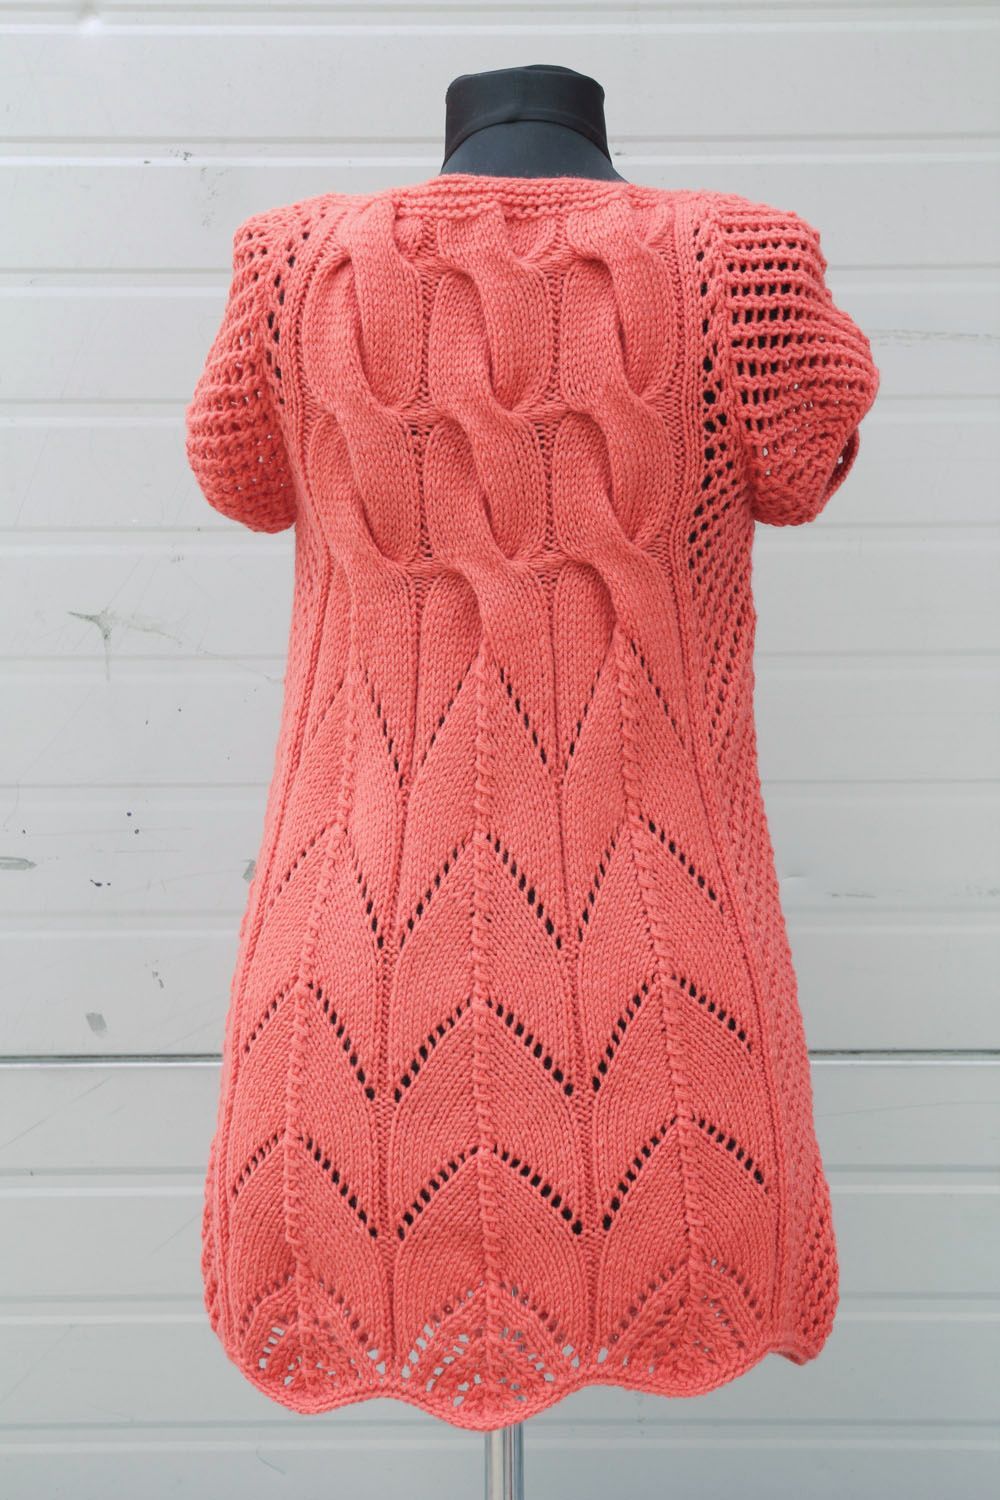 Robe tunique tricotée main corail photo 2